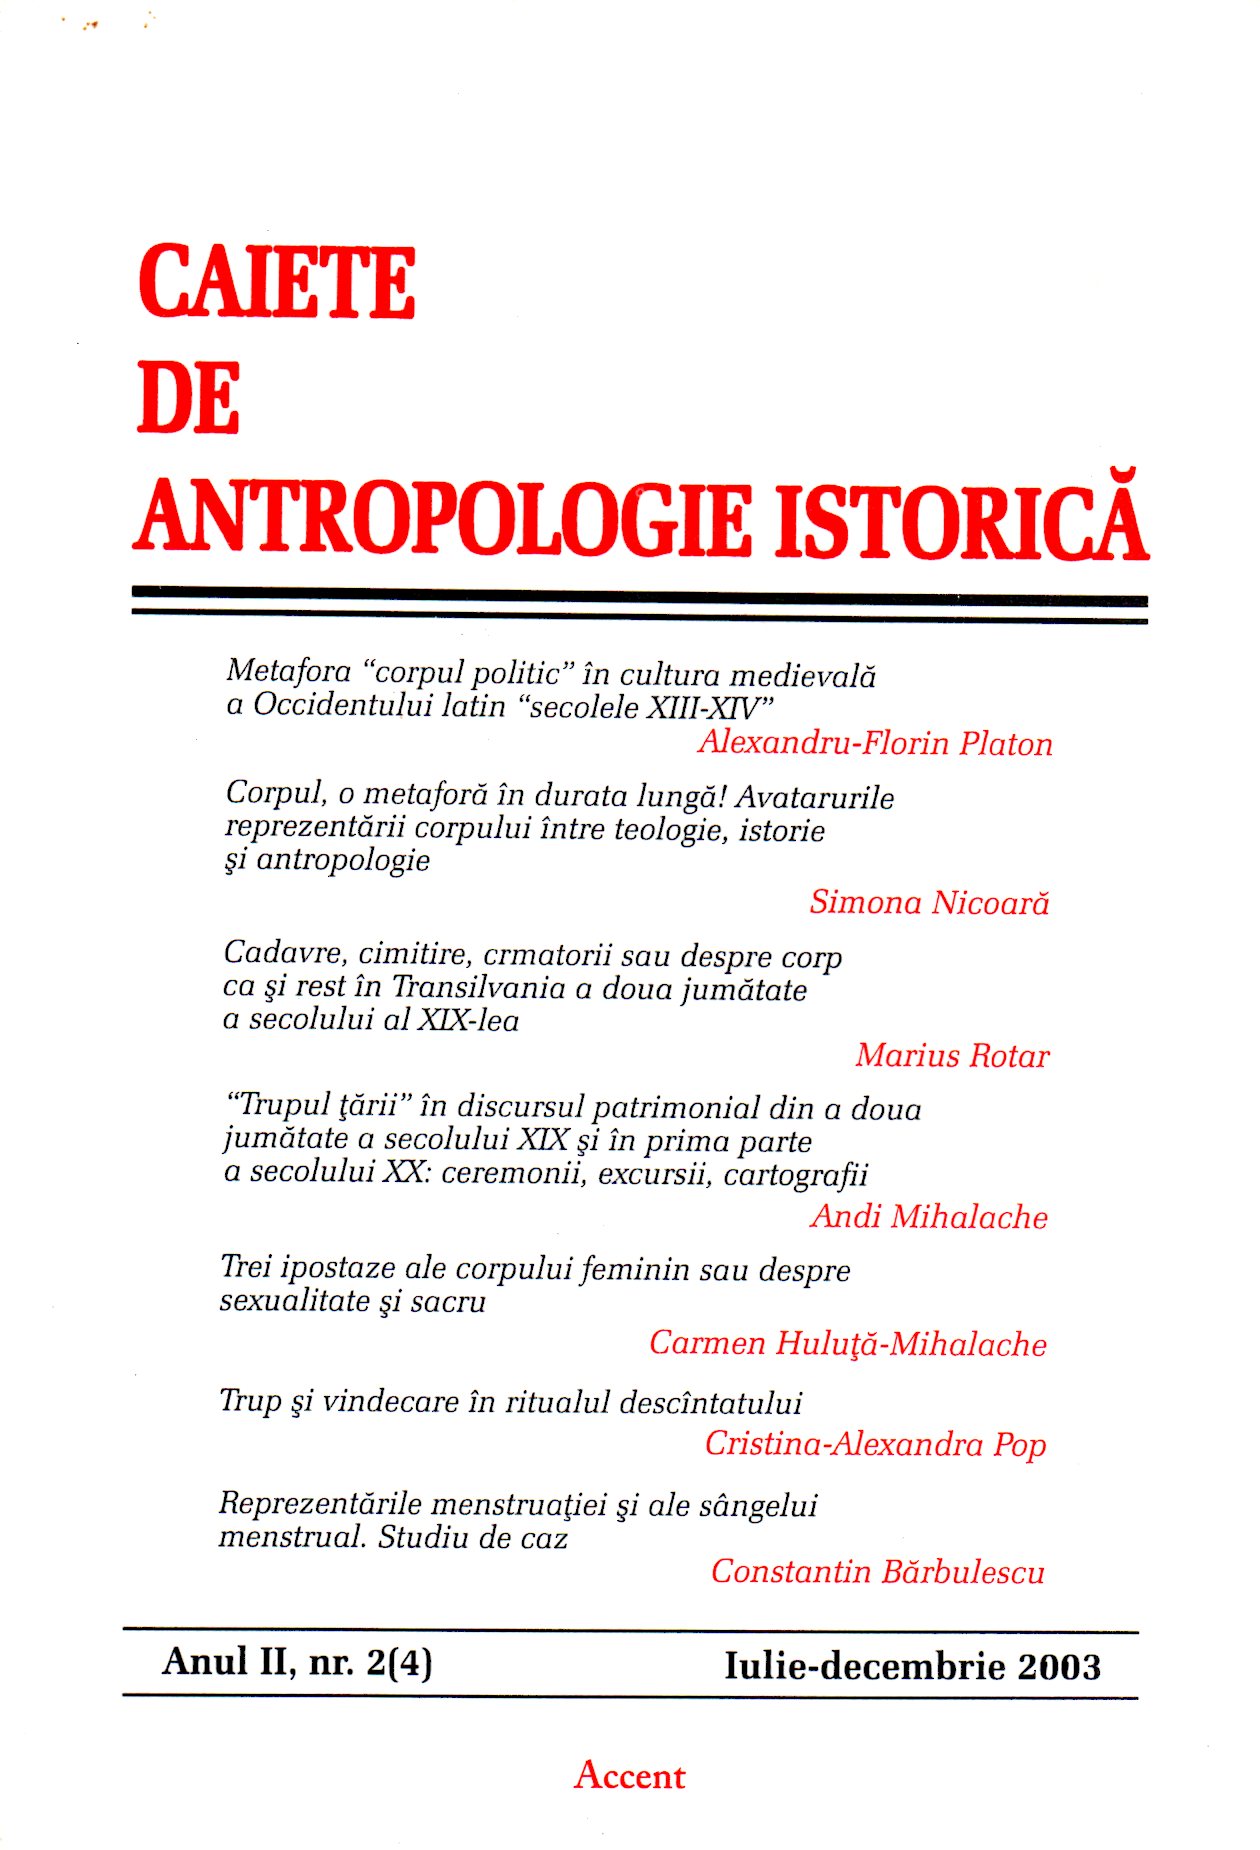 Louis Roman, Radu Ştefan Vergatti, Studies in Romanian Historical Demographics, Bucureşti, Editura Enciclopedicã, 2002 Cover Image